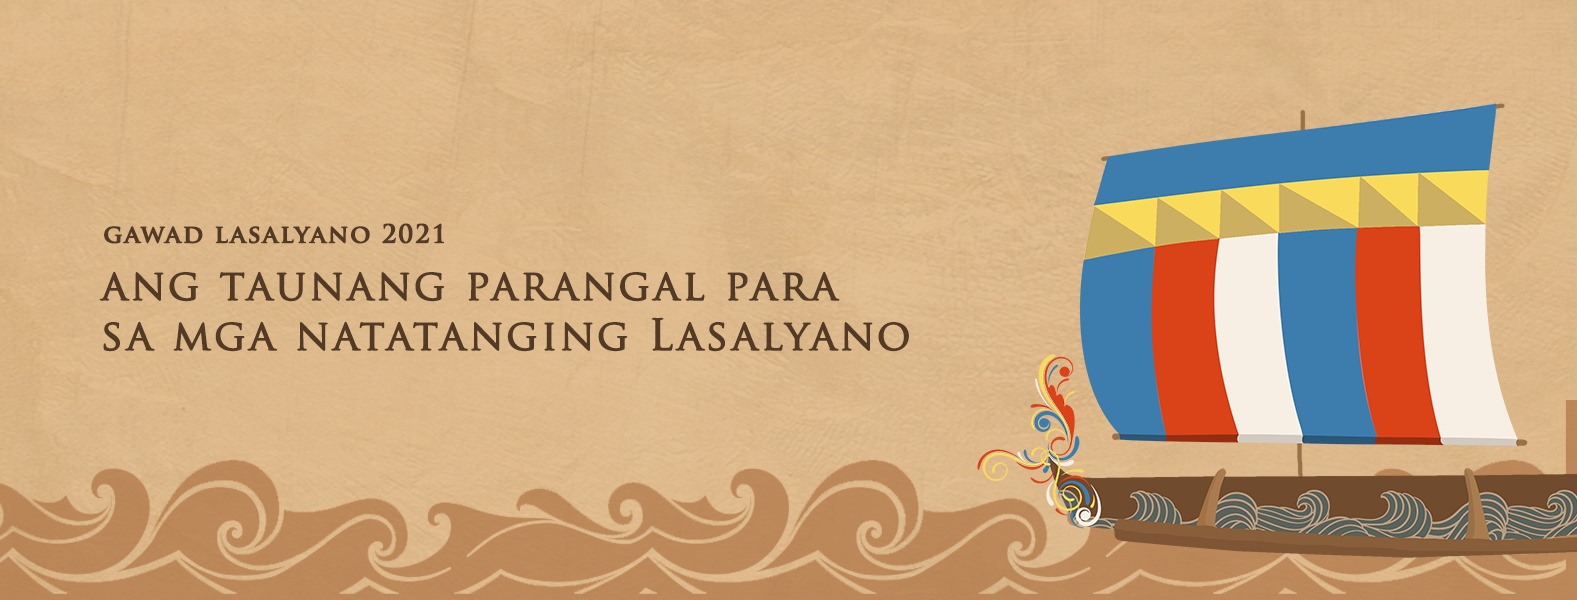 Read more about the article Pagsulong sa malikhaing pamumuno at mabuting pamamahala: Gawad Lasalyano 2021, opisyal nang inilunsad